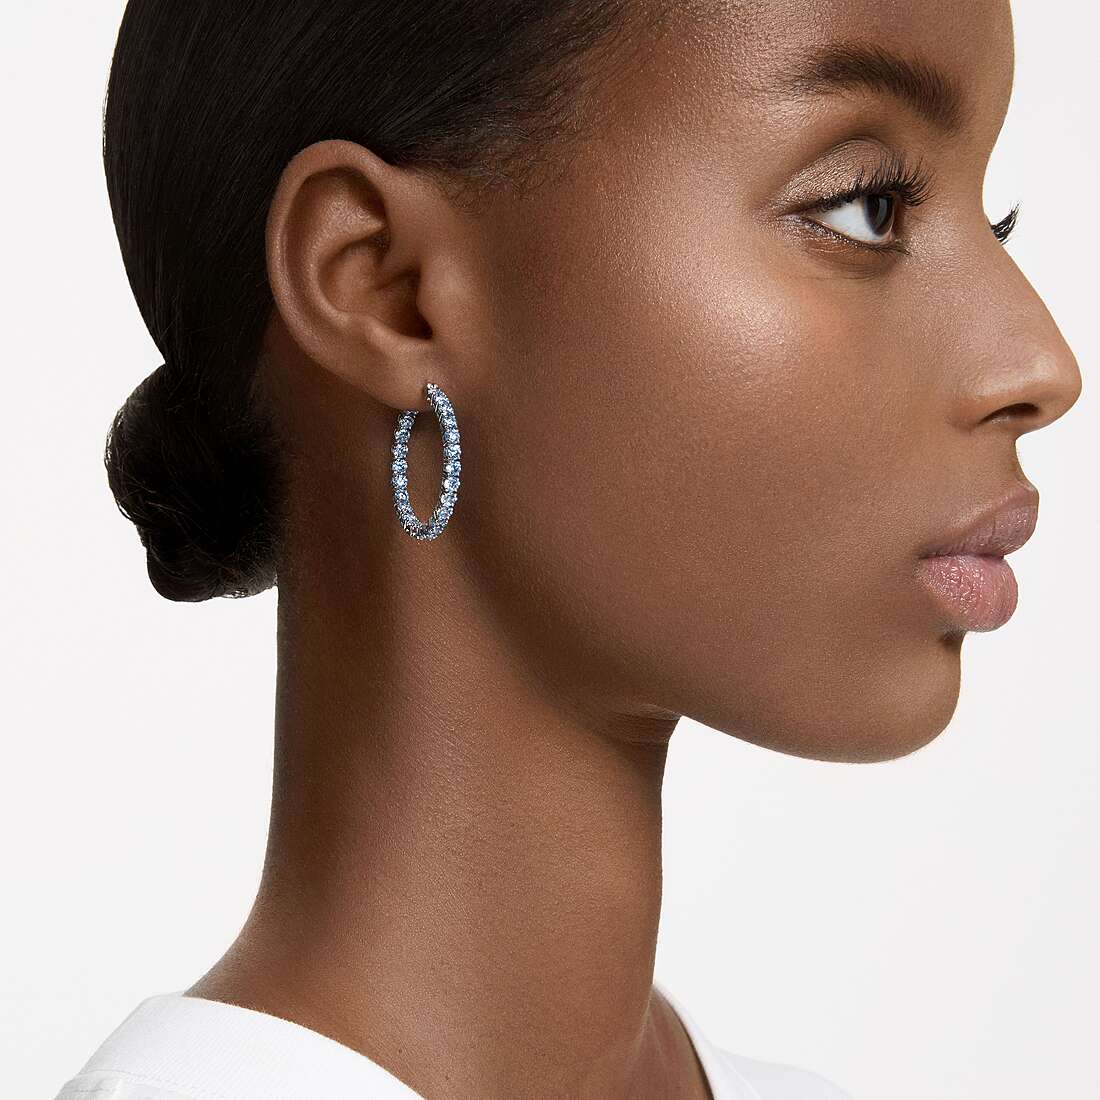 Swarovski earrings woman 5647446 wearing